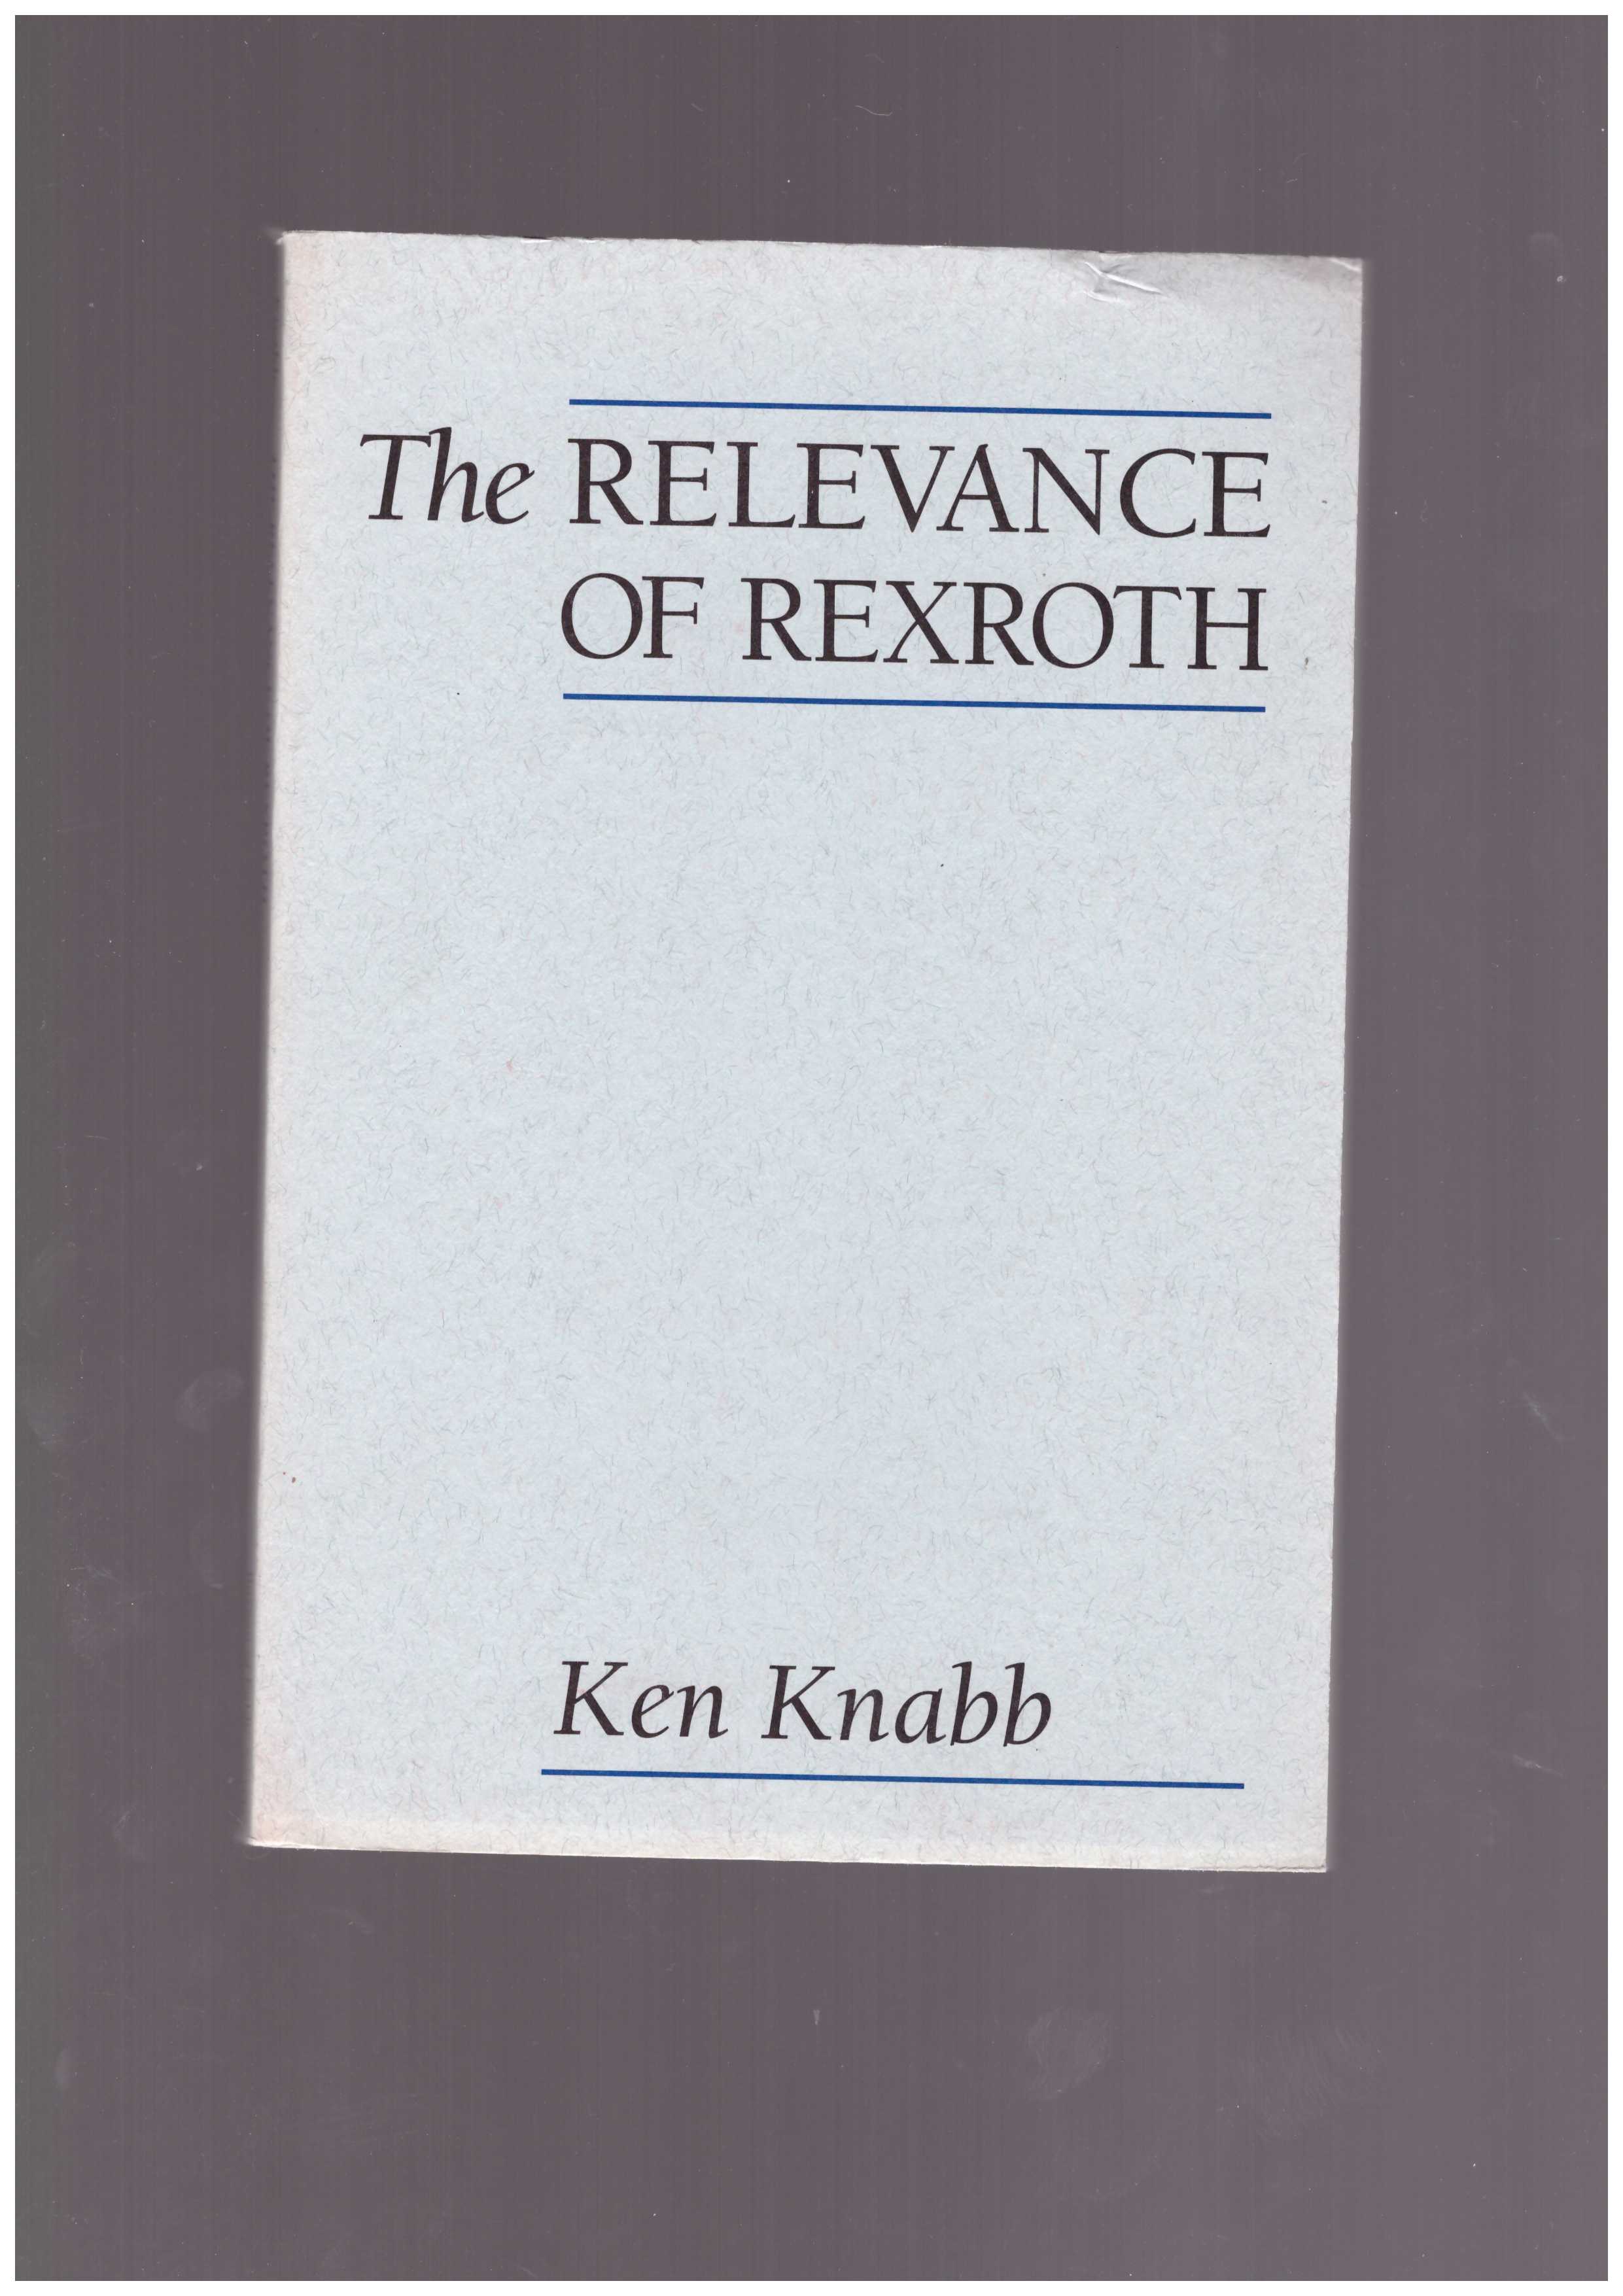 KNABB, Ken - The Relevance of Rexroth